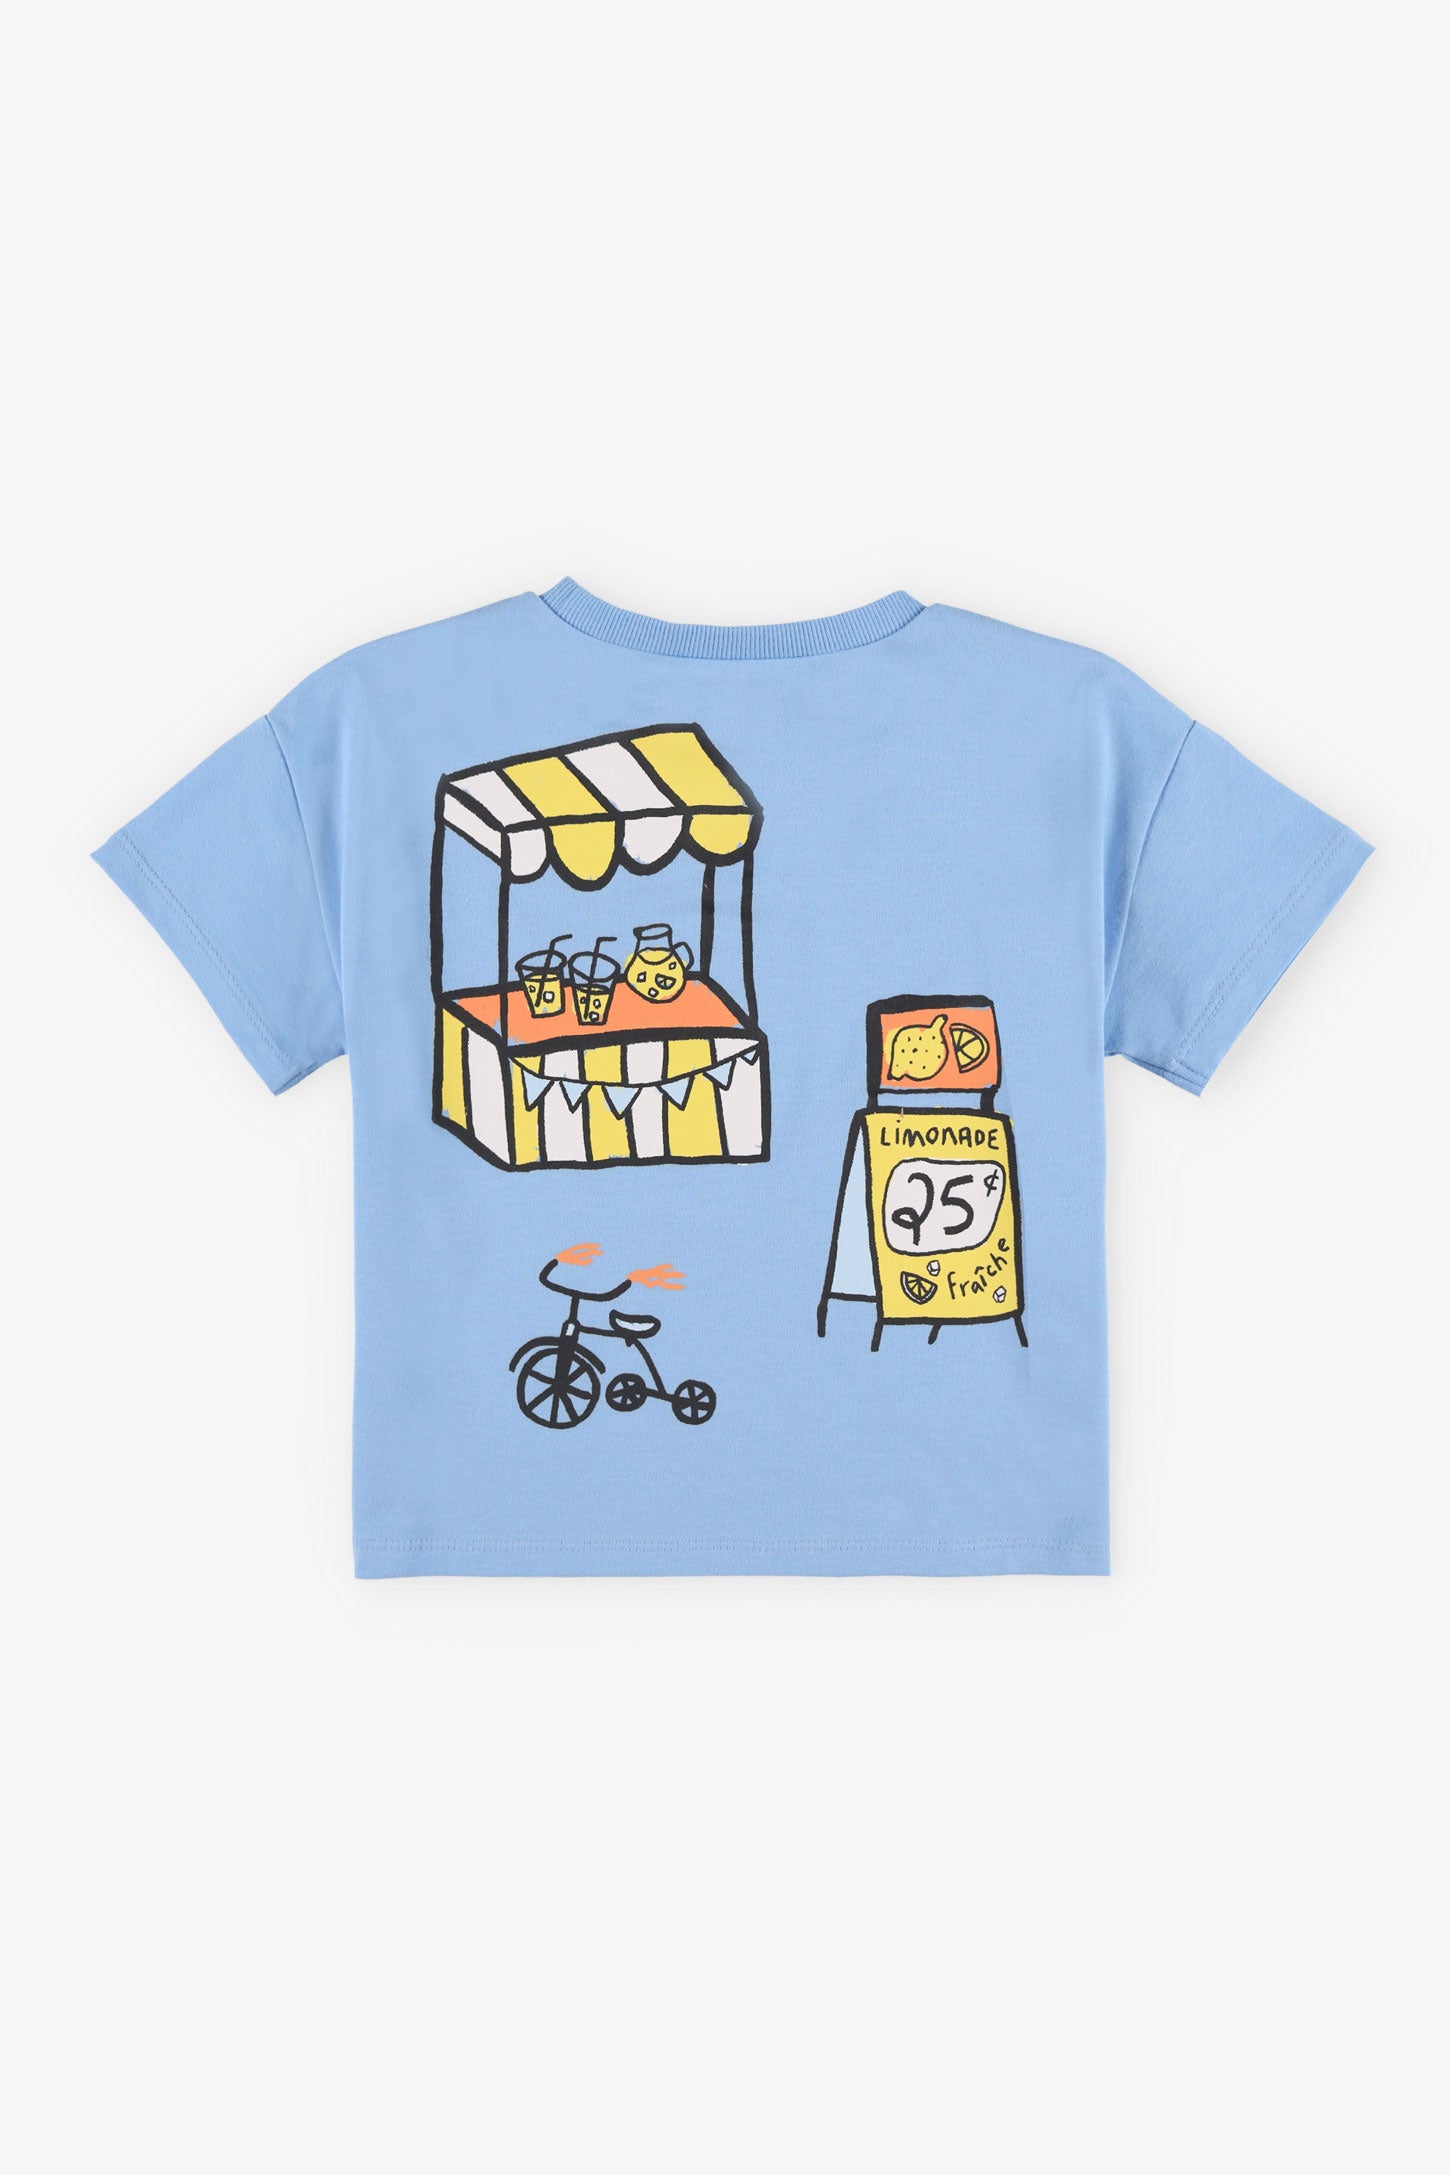 T-shirt imprimé en coton, 2T-3T - Bébé garçon && BLEU